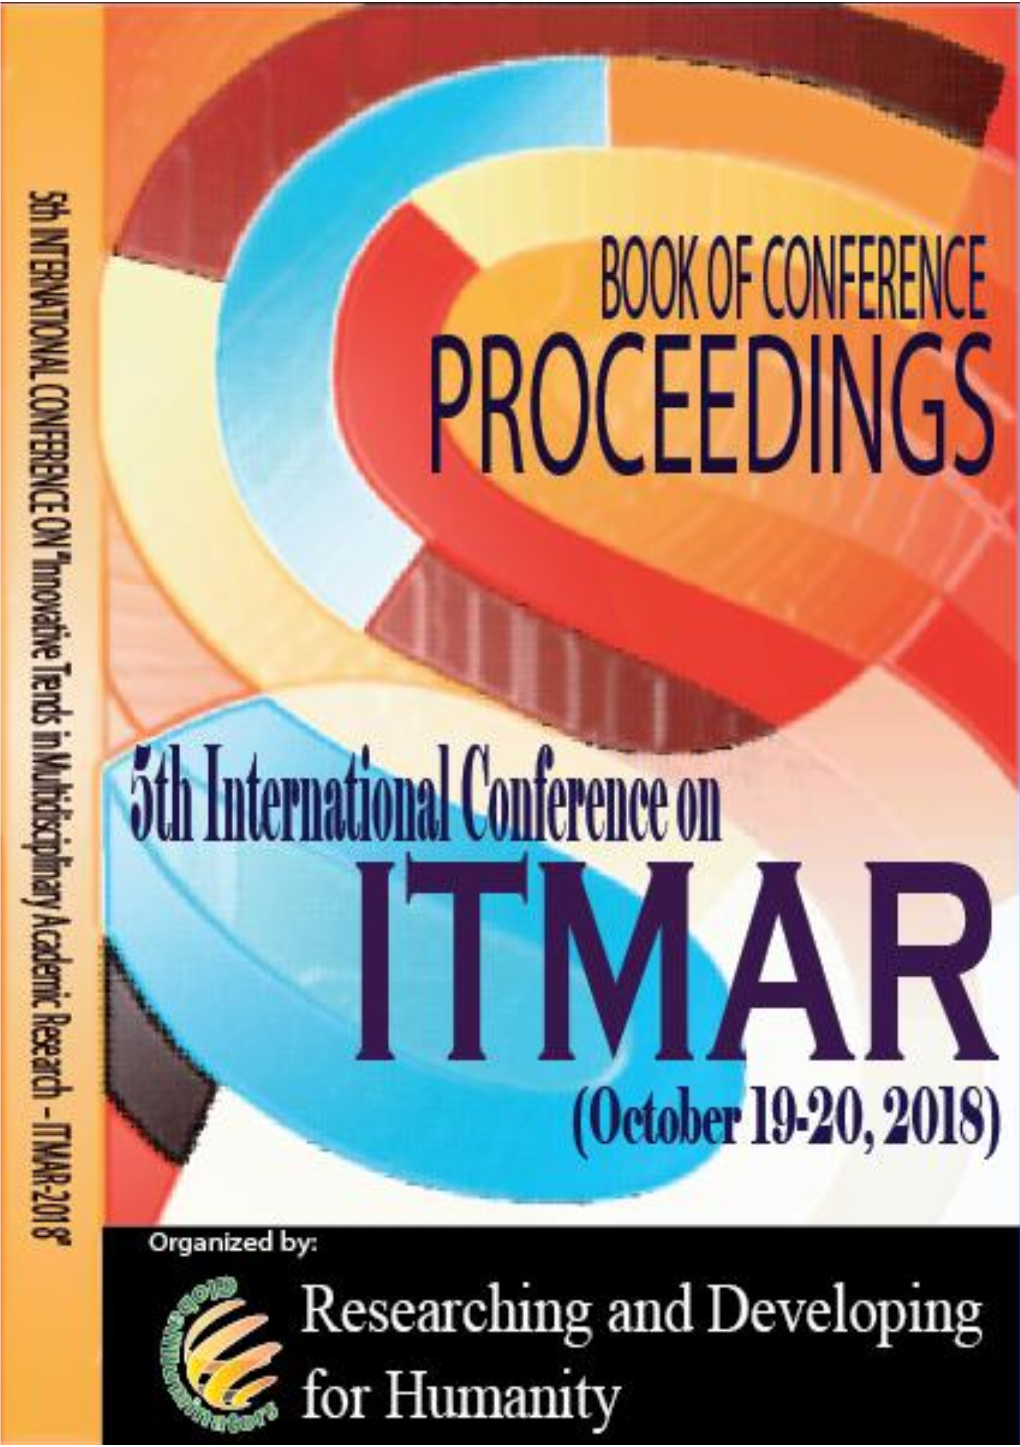 ITMAR 2018 Abstract Proceeding